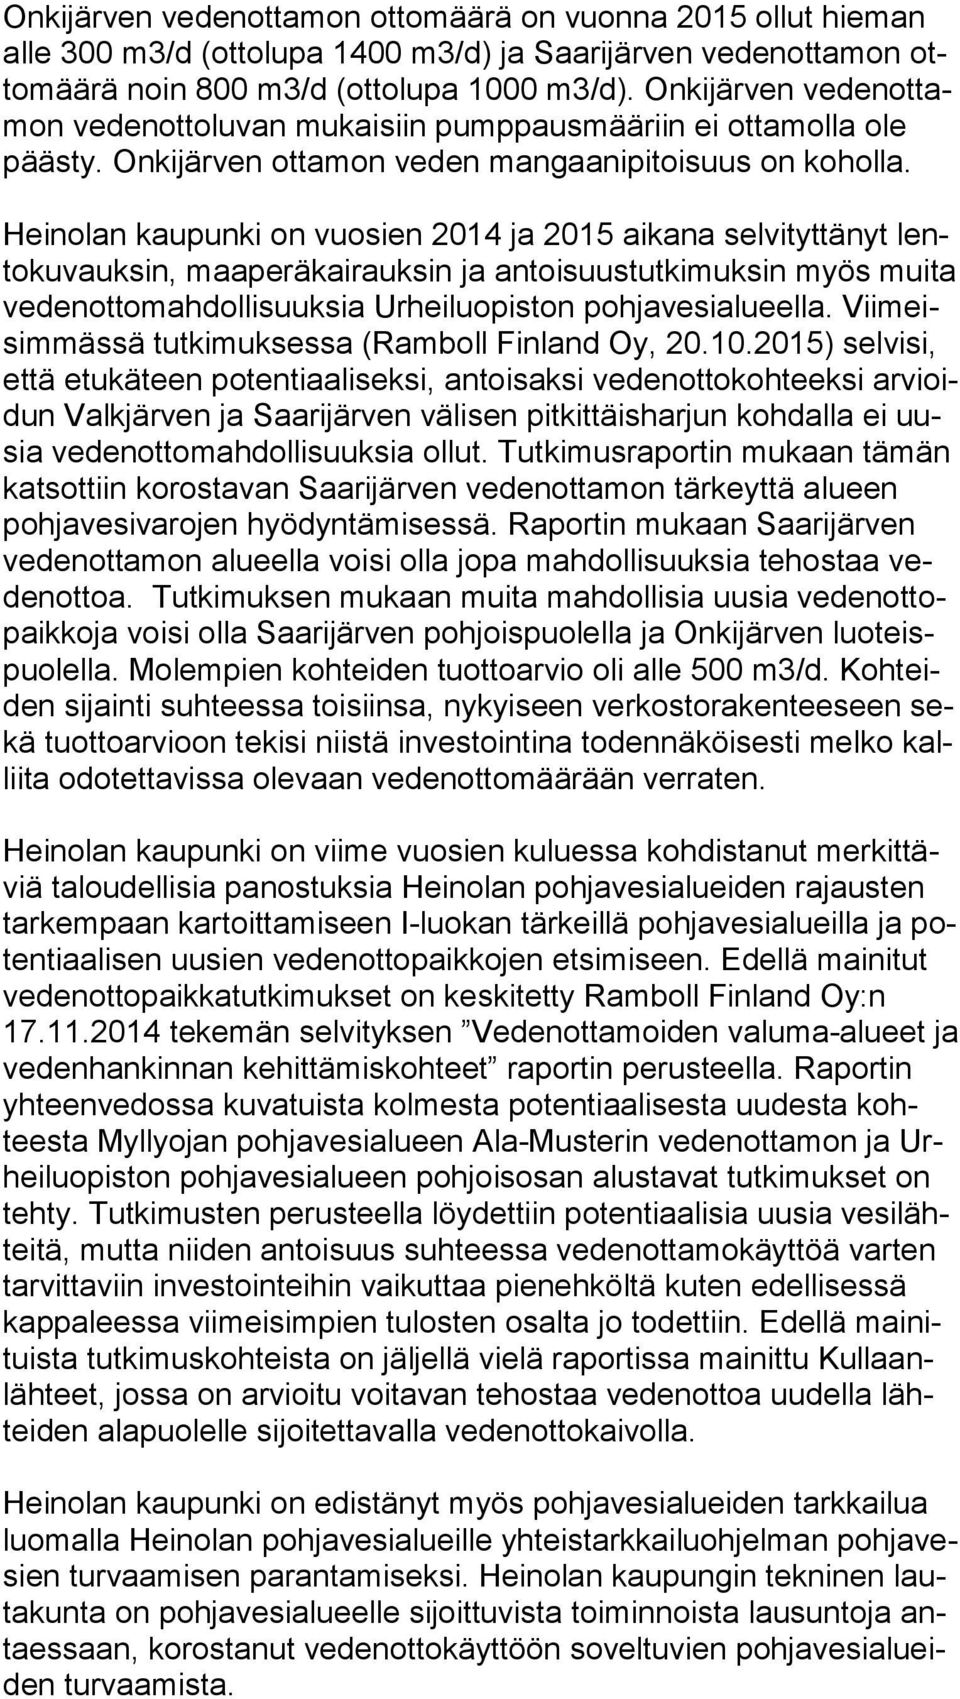 Heinolan kaupunki on vuosien 2014 ja 2015 aikana selvityttänyt lento ku vauk sin, maaperäkairauksin ja antoisuustutkimuksin myös muita ve den ot to mah dol li suuk sia Urheiluopiston